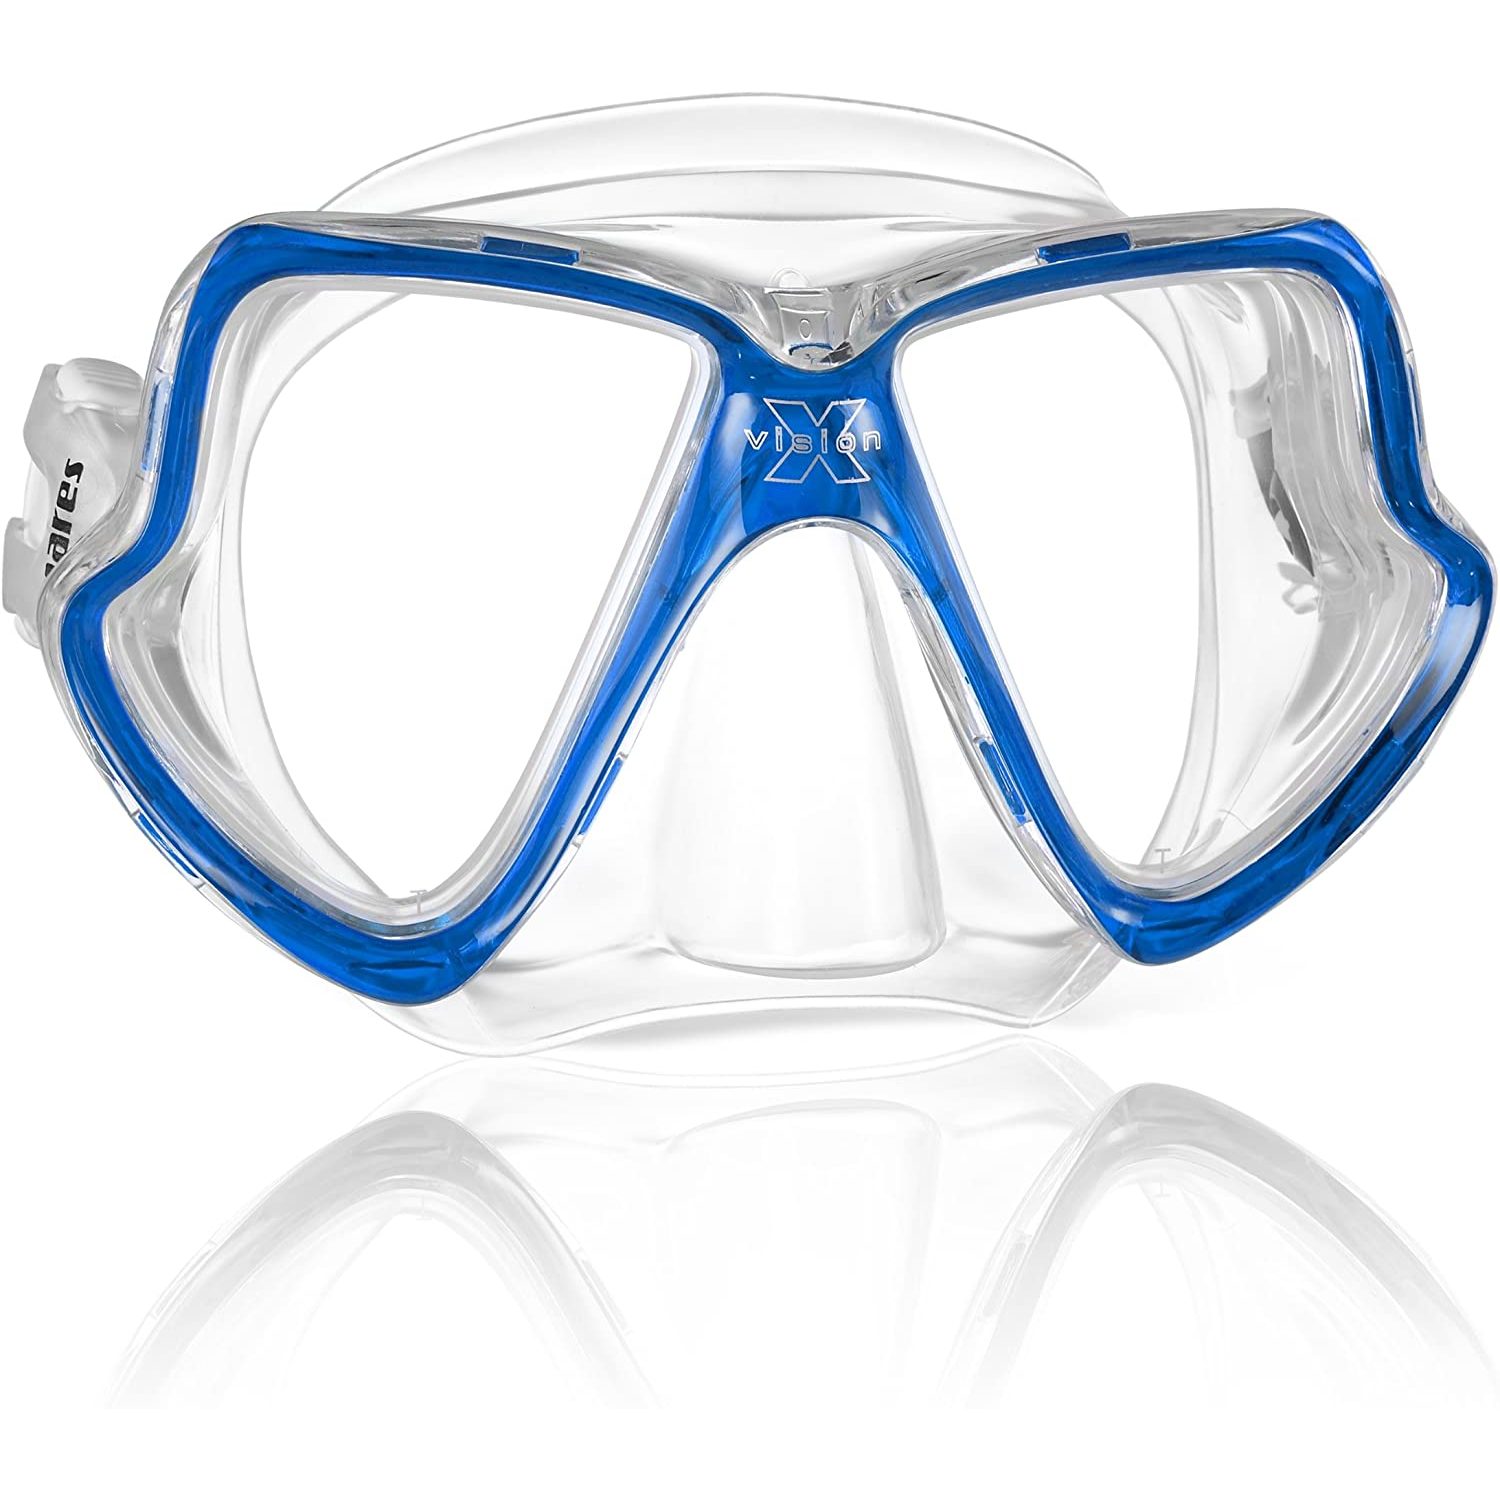 Маска для плавания двухлинзовая для узких лиц Mares X-Vision Mid 411024 прозрачный/синий для взрослых